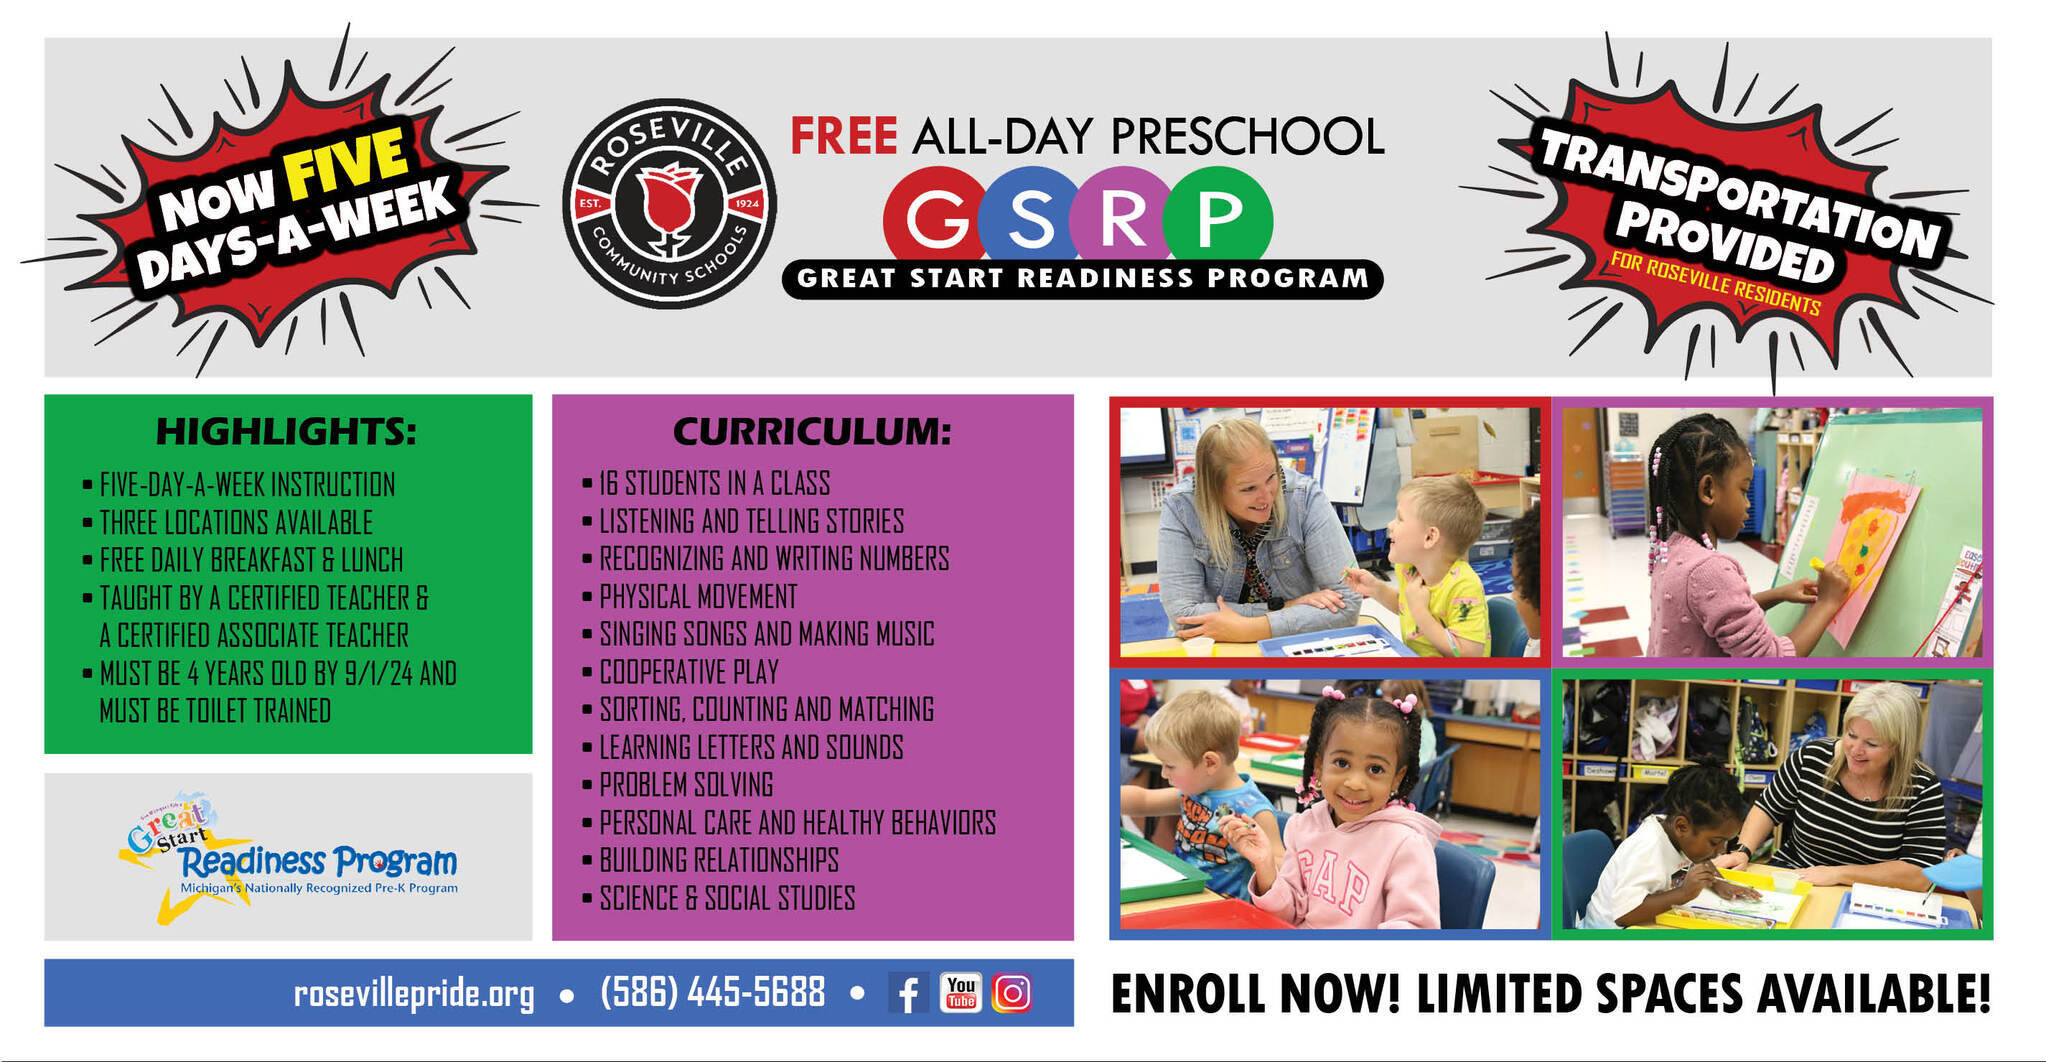 Free All-Day Preschool